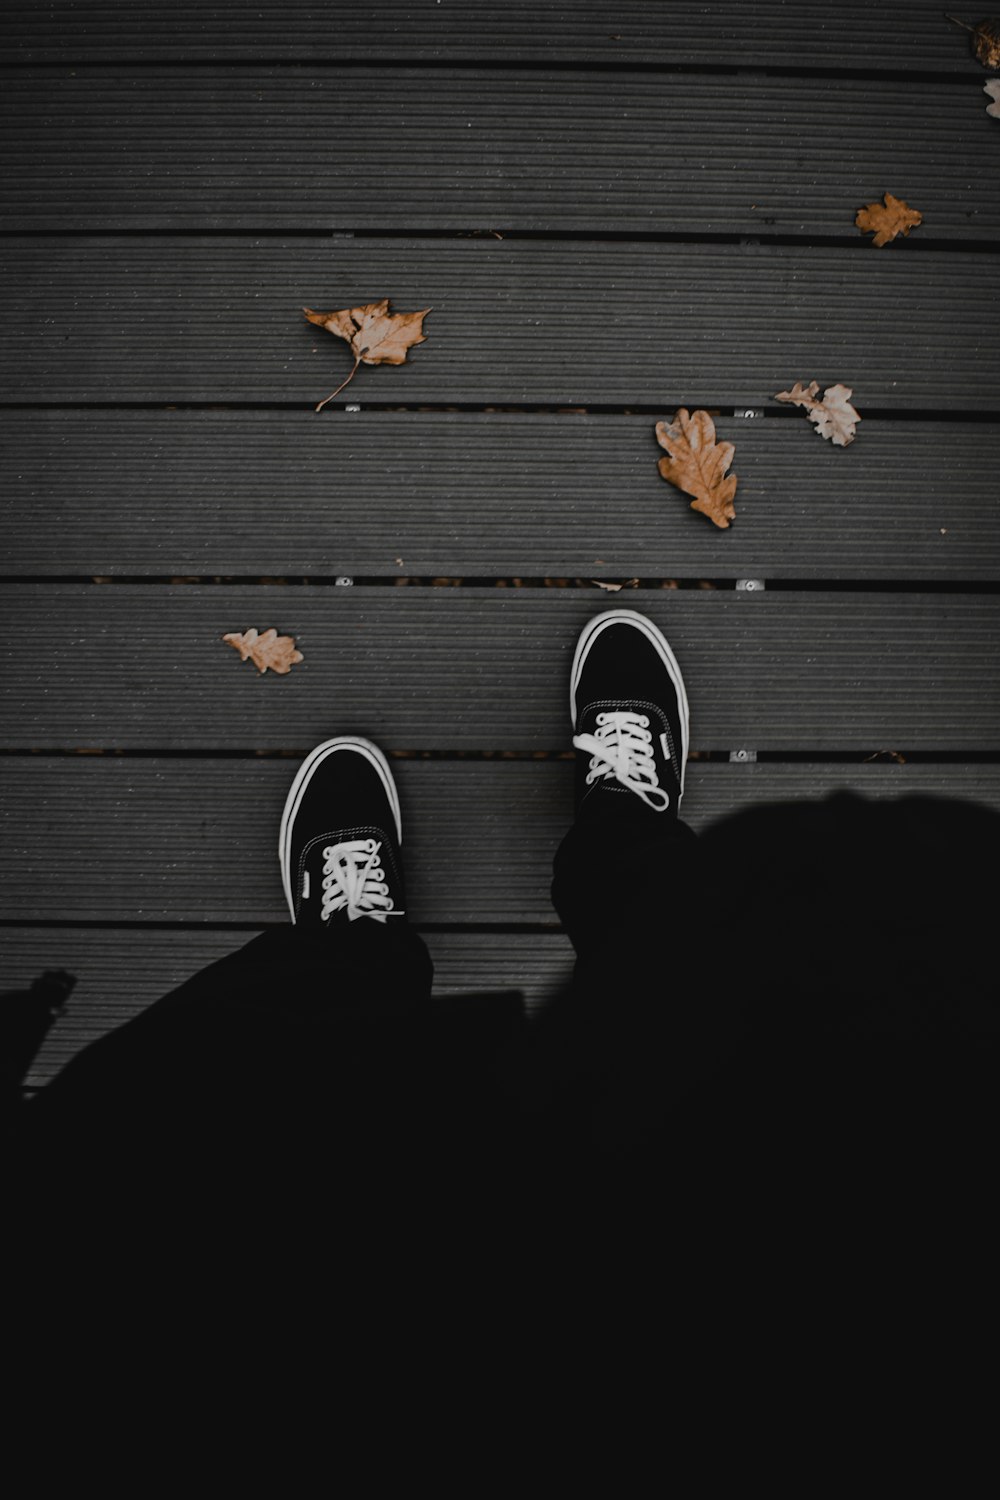 personne en pantalon noir portant des baskets noires et blanches debout sur un plancher en bois noir